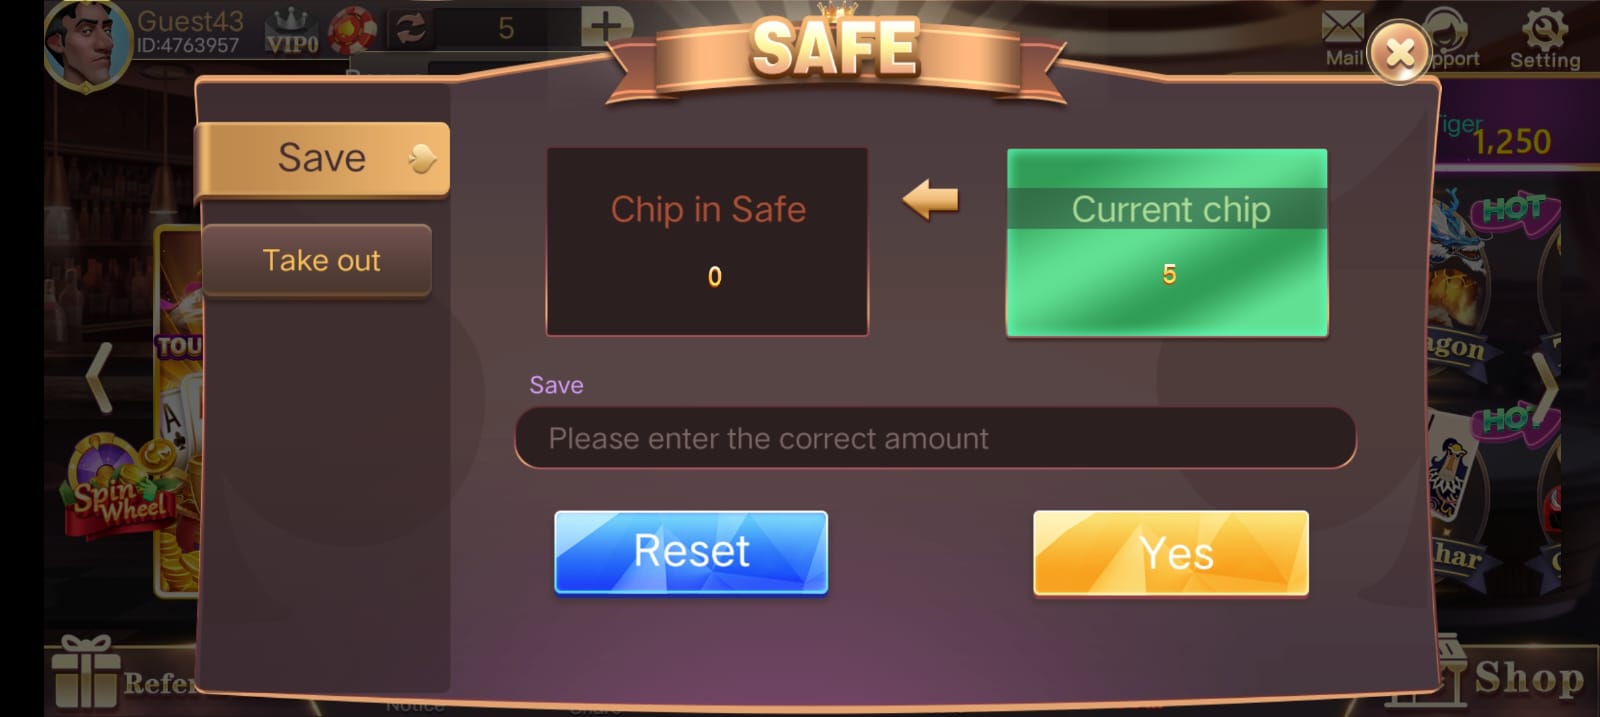 Safe Button Program In Rummy Club App